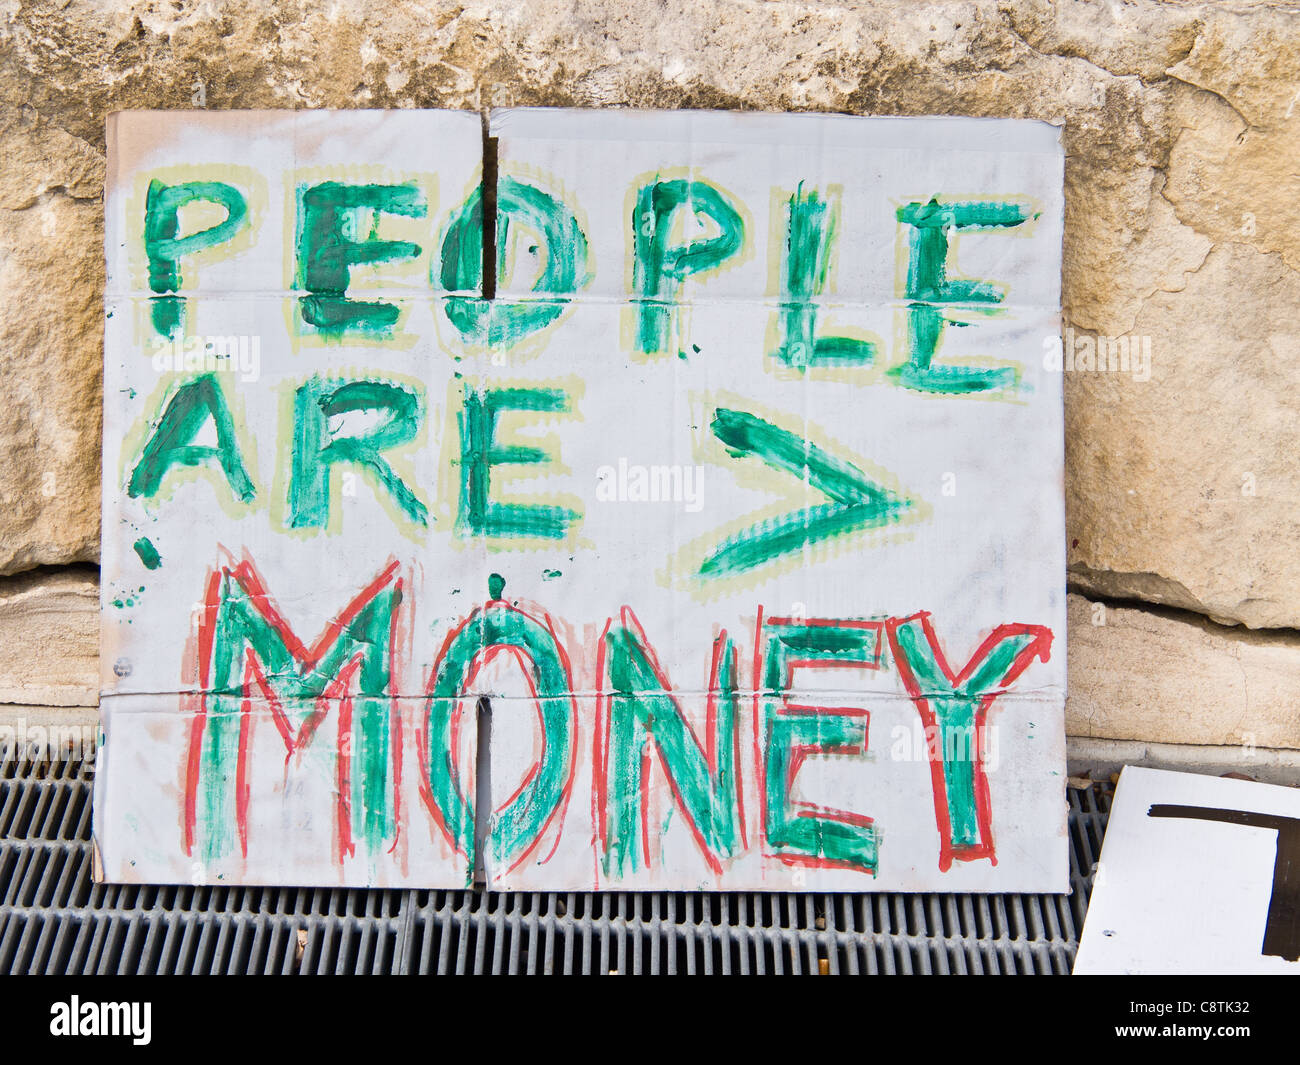 Les gens sont plus importants que l'argent - un signe de protestation à occuper Austin, une ramification de la mouvement occupons Wall Street Banque D'Images